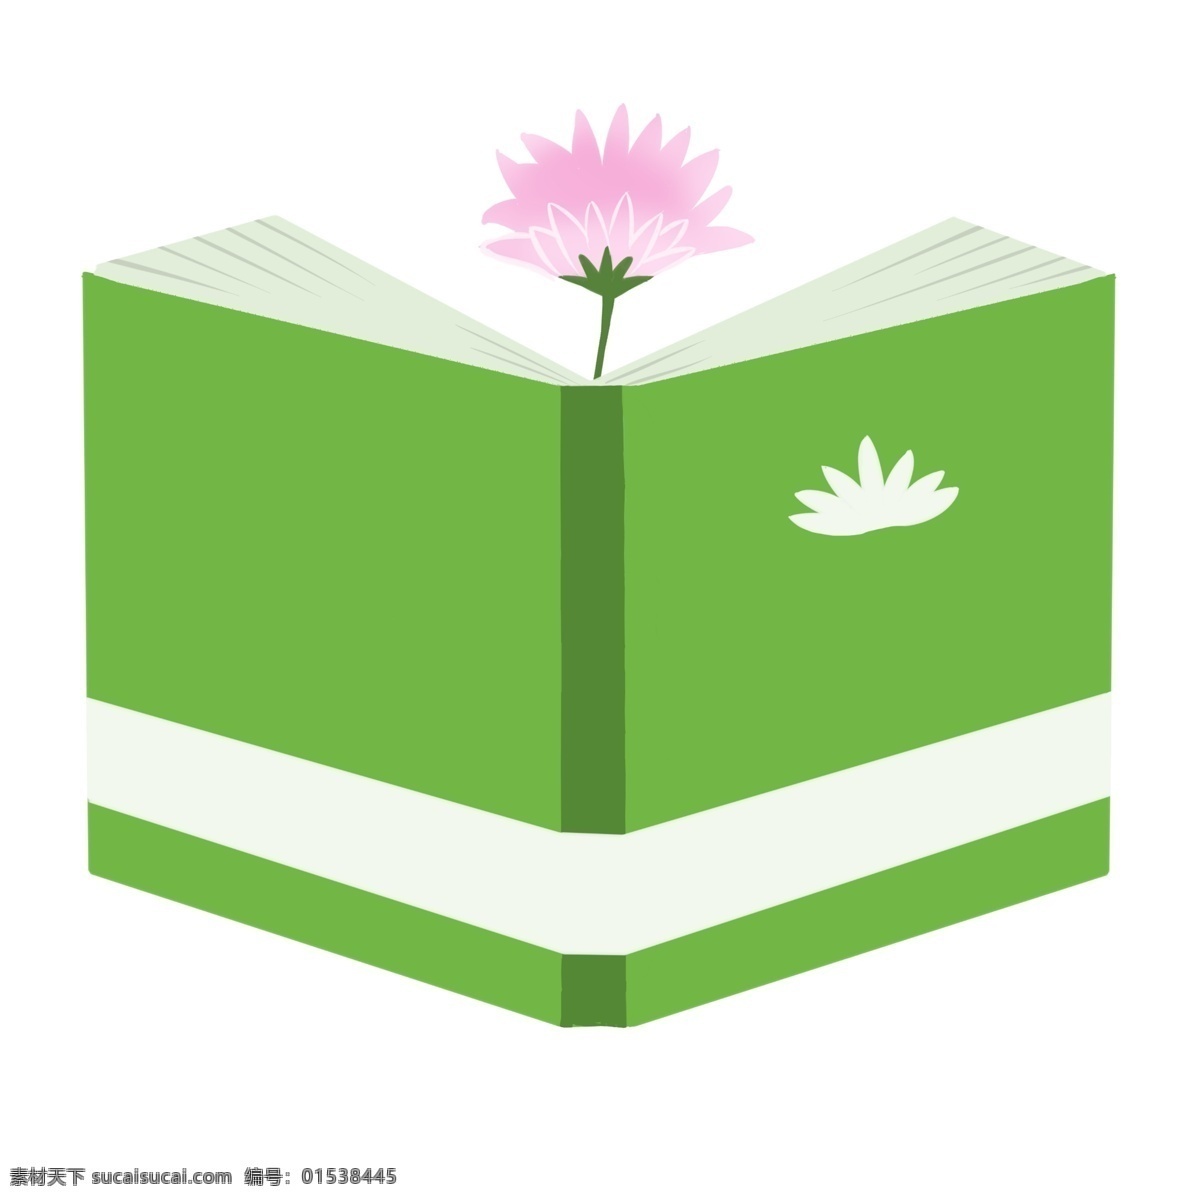 绿色卡通书籍 绿色 书籍 书本